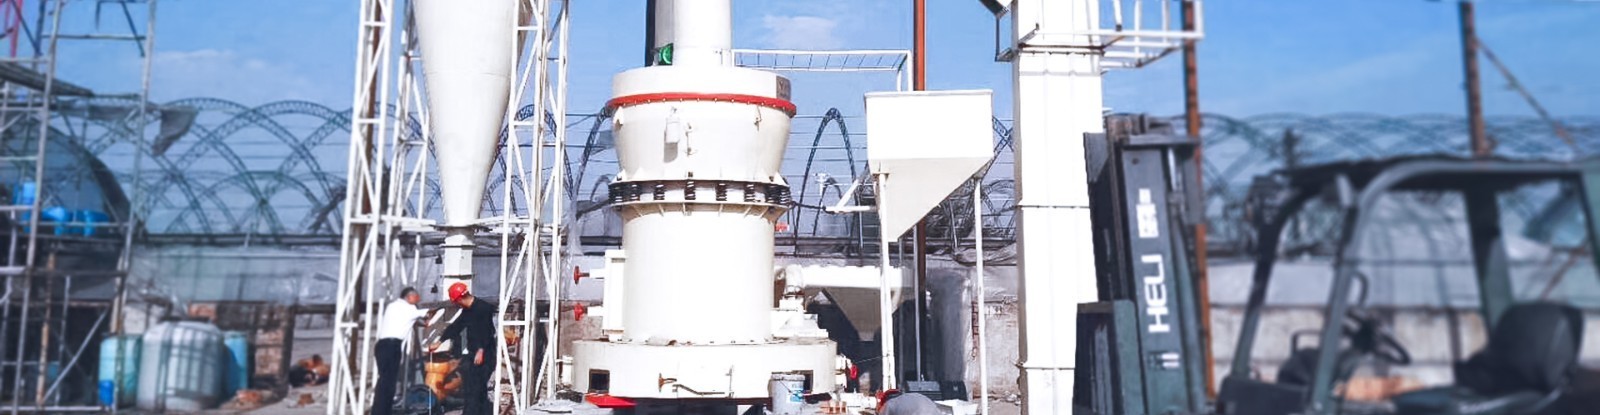 內蒙古4R雷蒙磨粉機日產40噸煤粉生產線